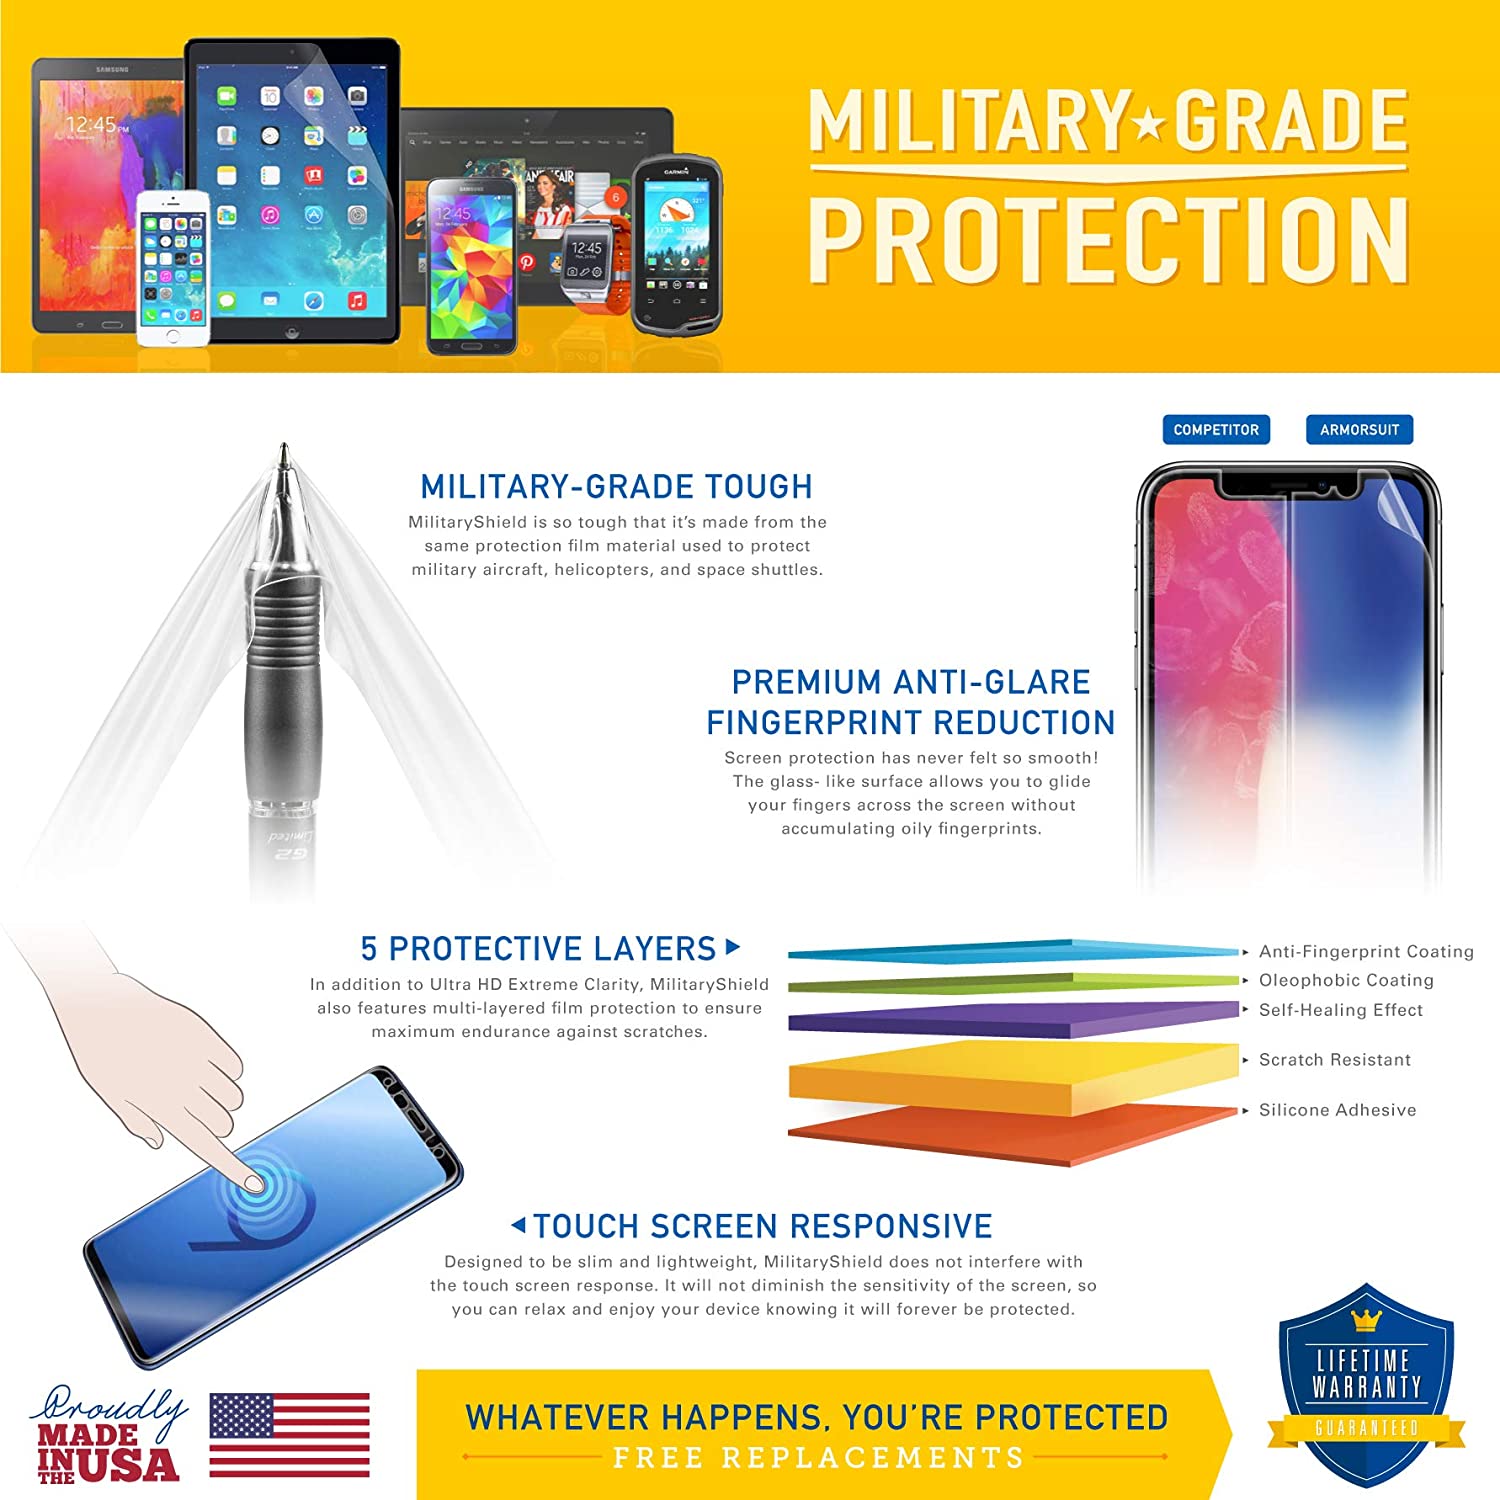 Samsung Galaxy Tab 4 7.0 Screen Protector